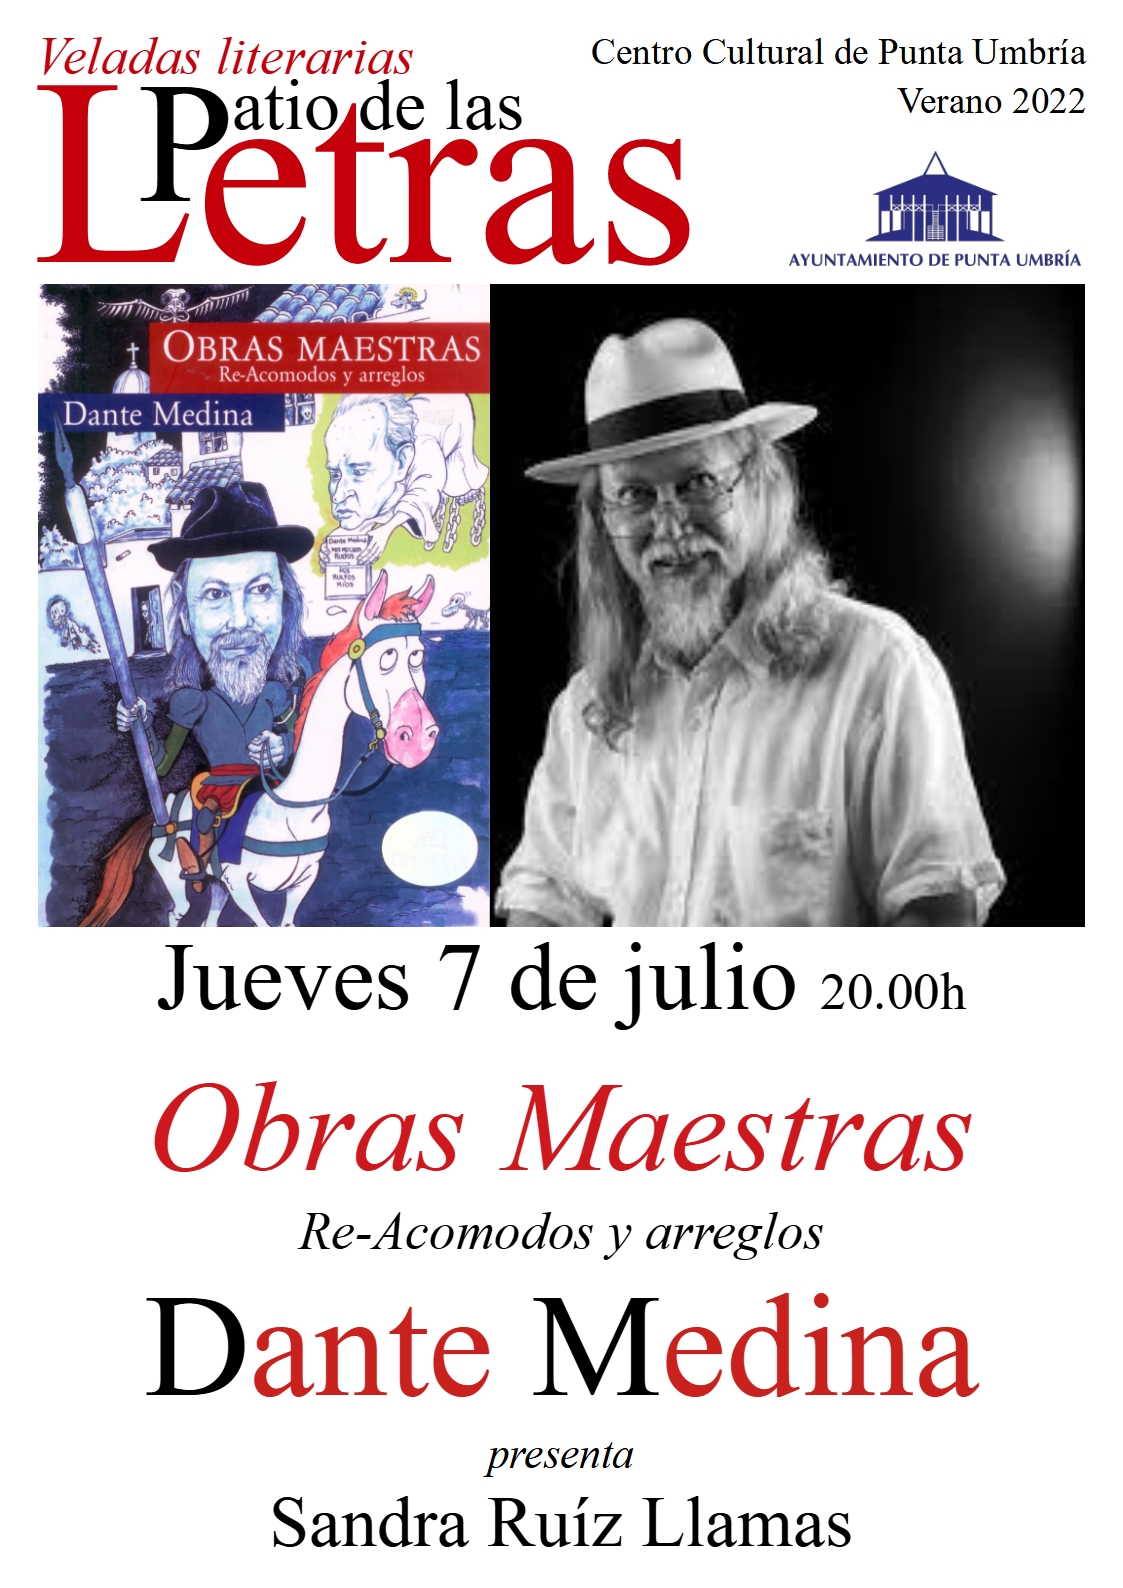 El mexicano Dante Medina protagoniza las veladas literarias del Patio de las Letras de Punta Umbría